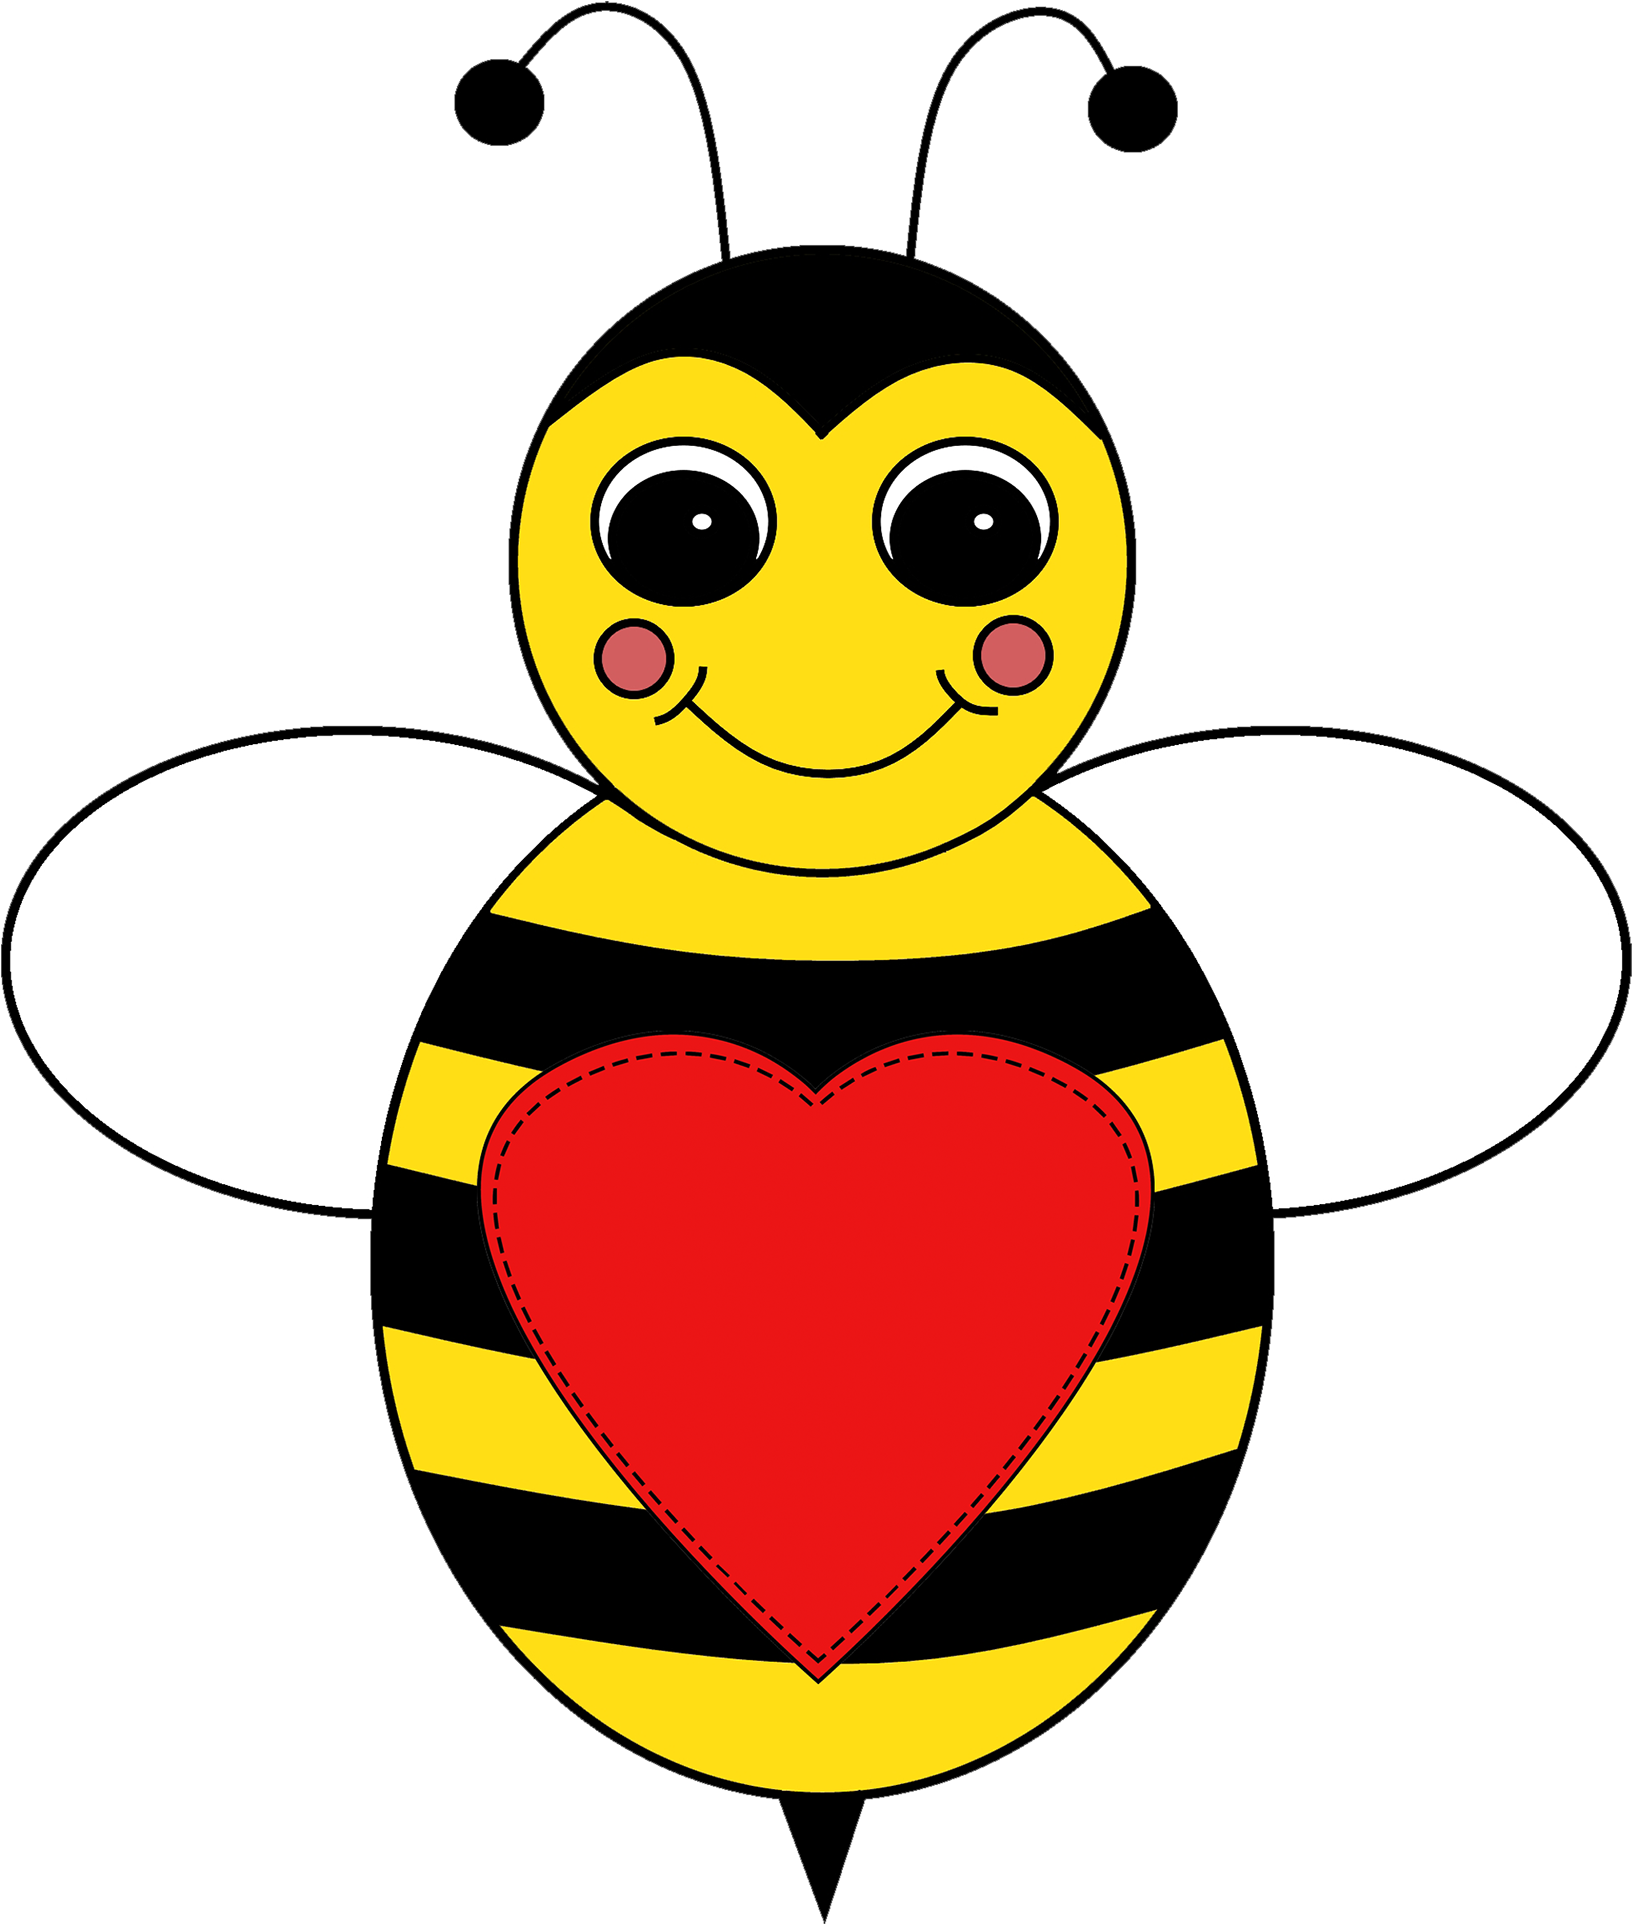 Cupcakedownload Now Bee Beedownload Now Ladybug Clipart - Full 